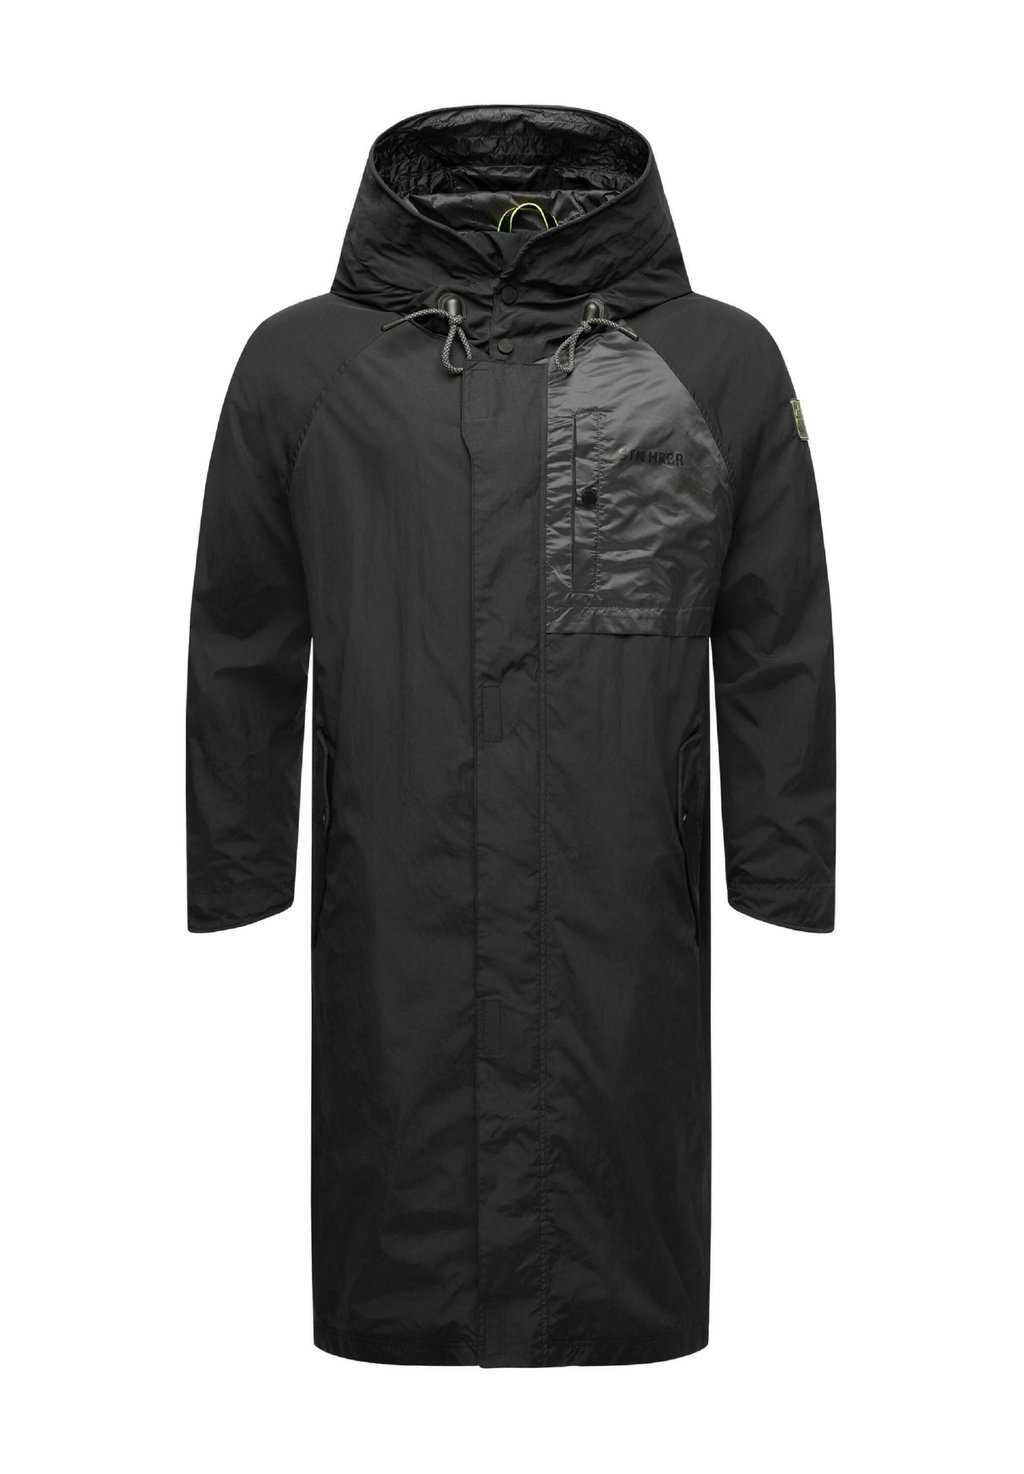 Дождевик/водоотталкивающая куртка ZAFAAR STONE HARBOUR, цвет black